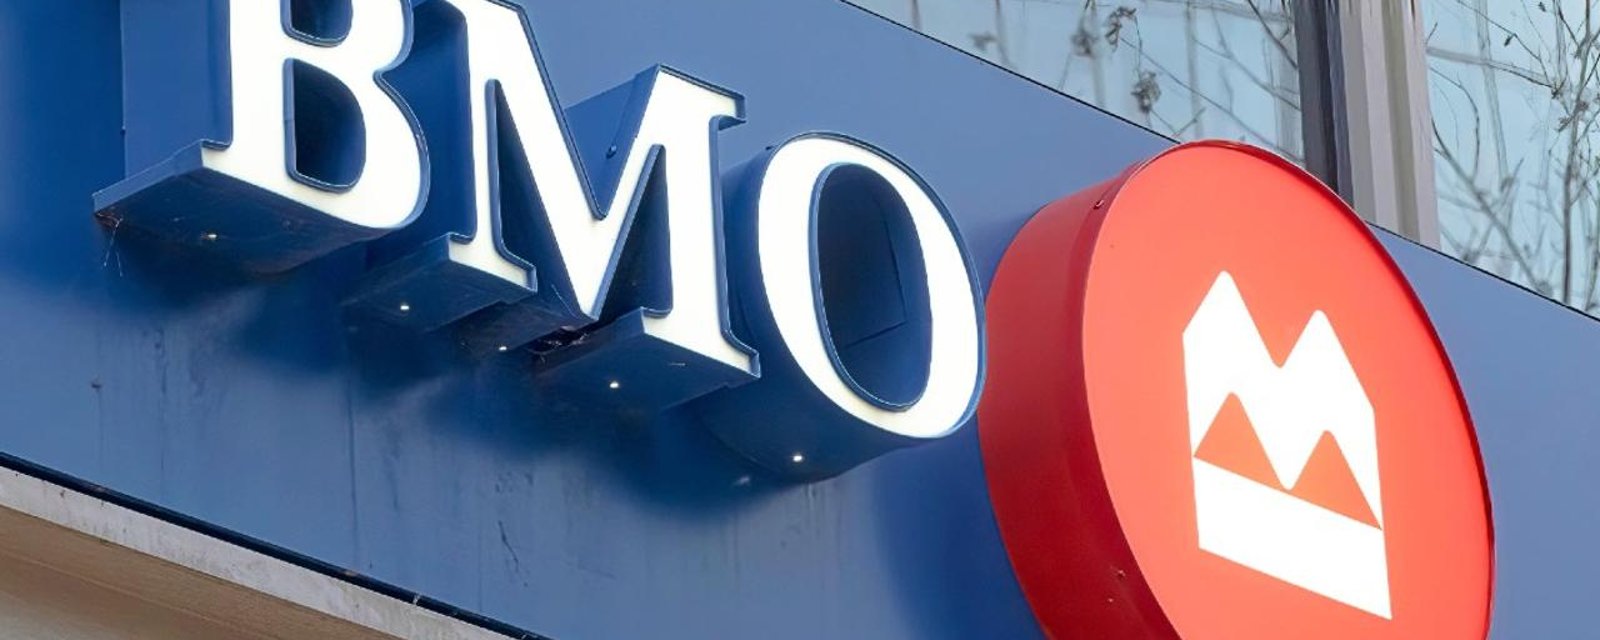 Des dizaines de personnes intentent une action collective contre la banque BMO